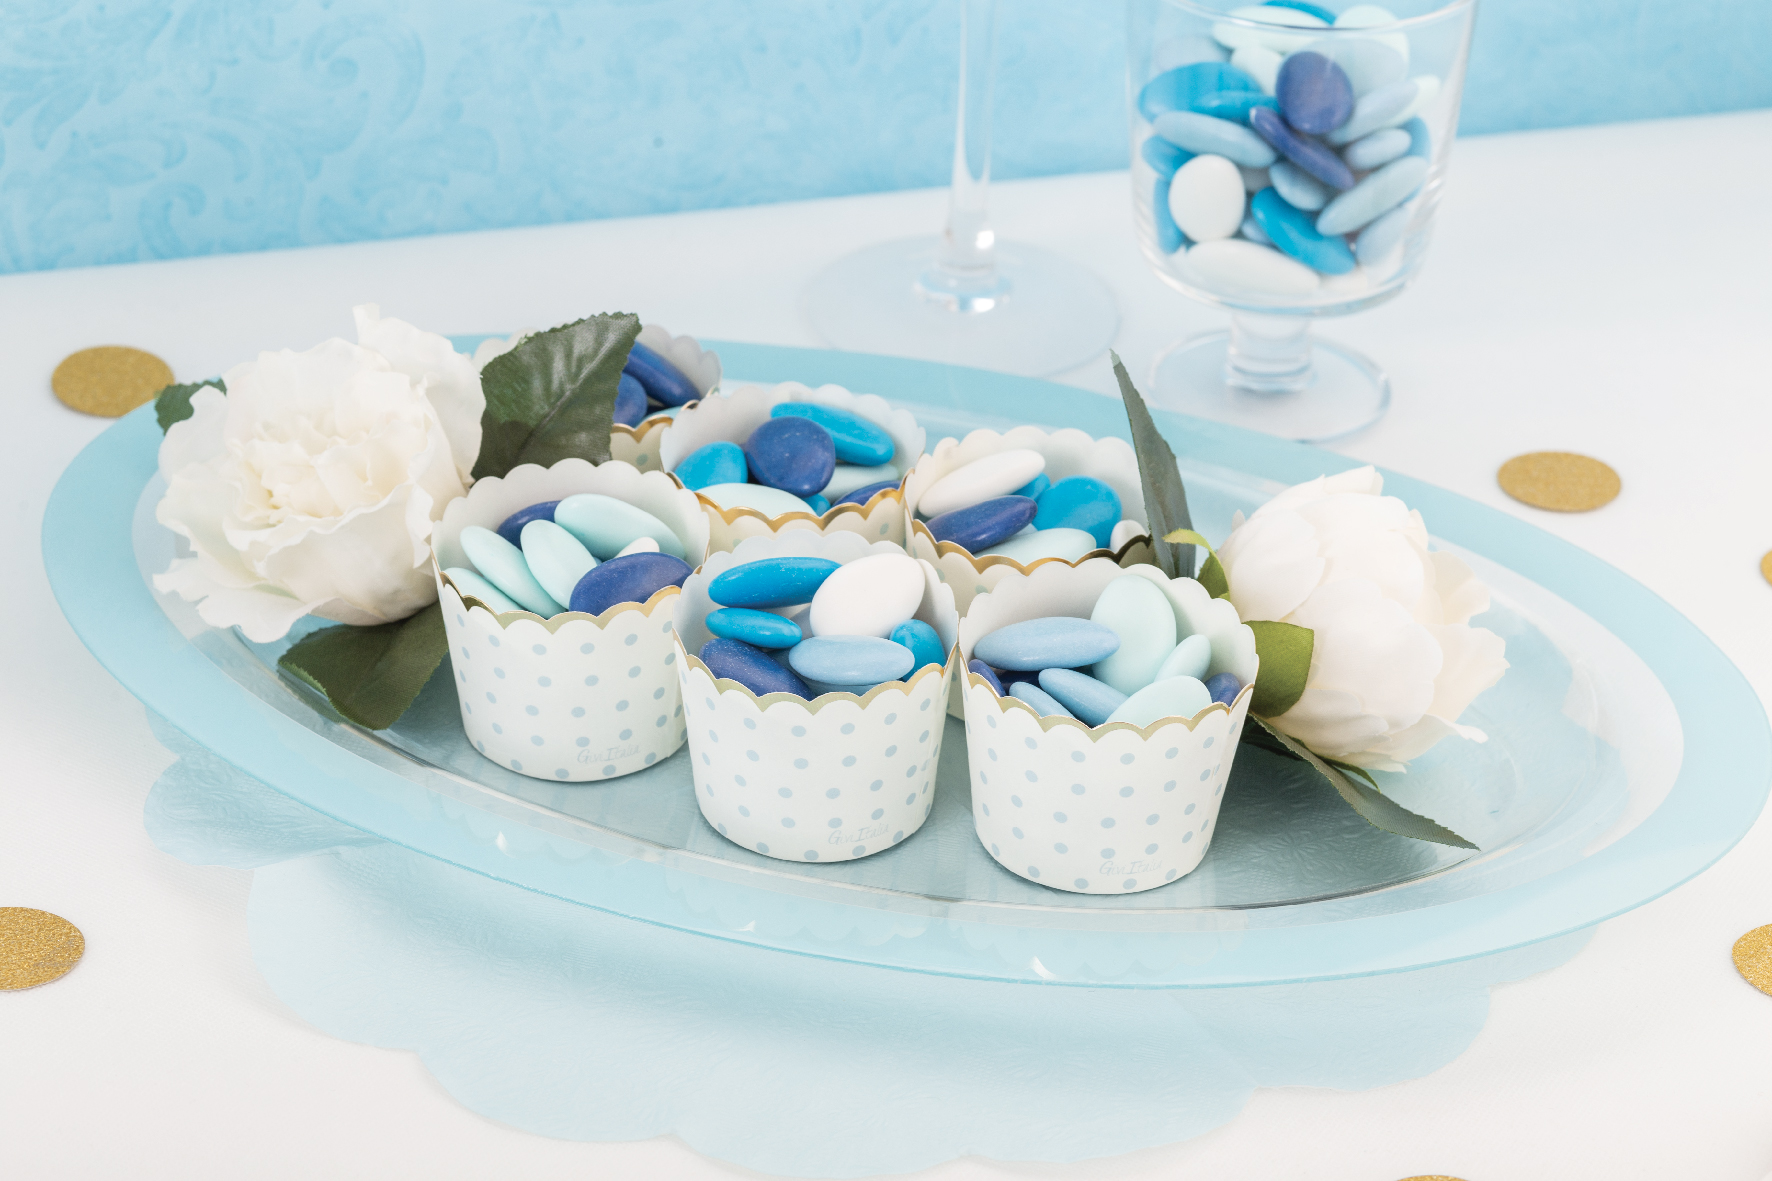 Moules à cupcakes bleu blanc rouge x45